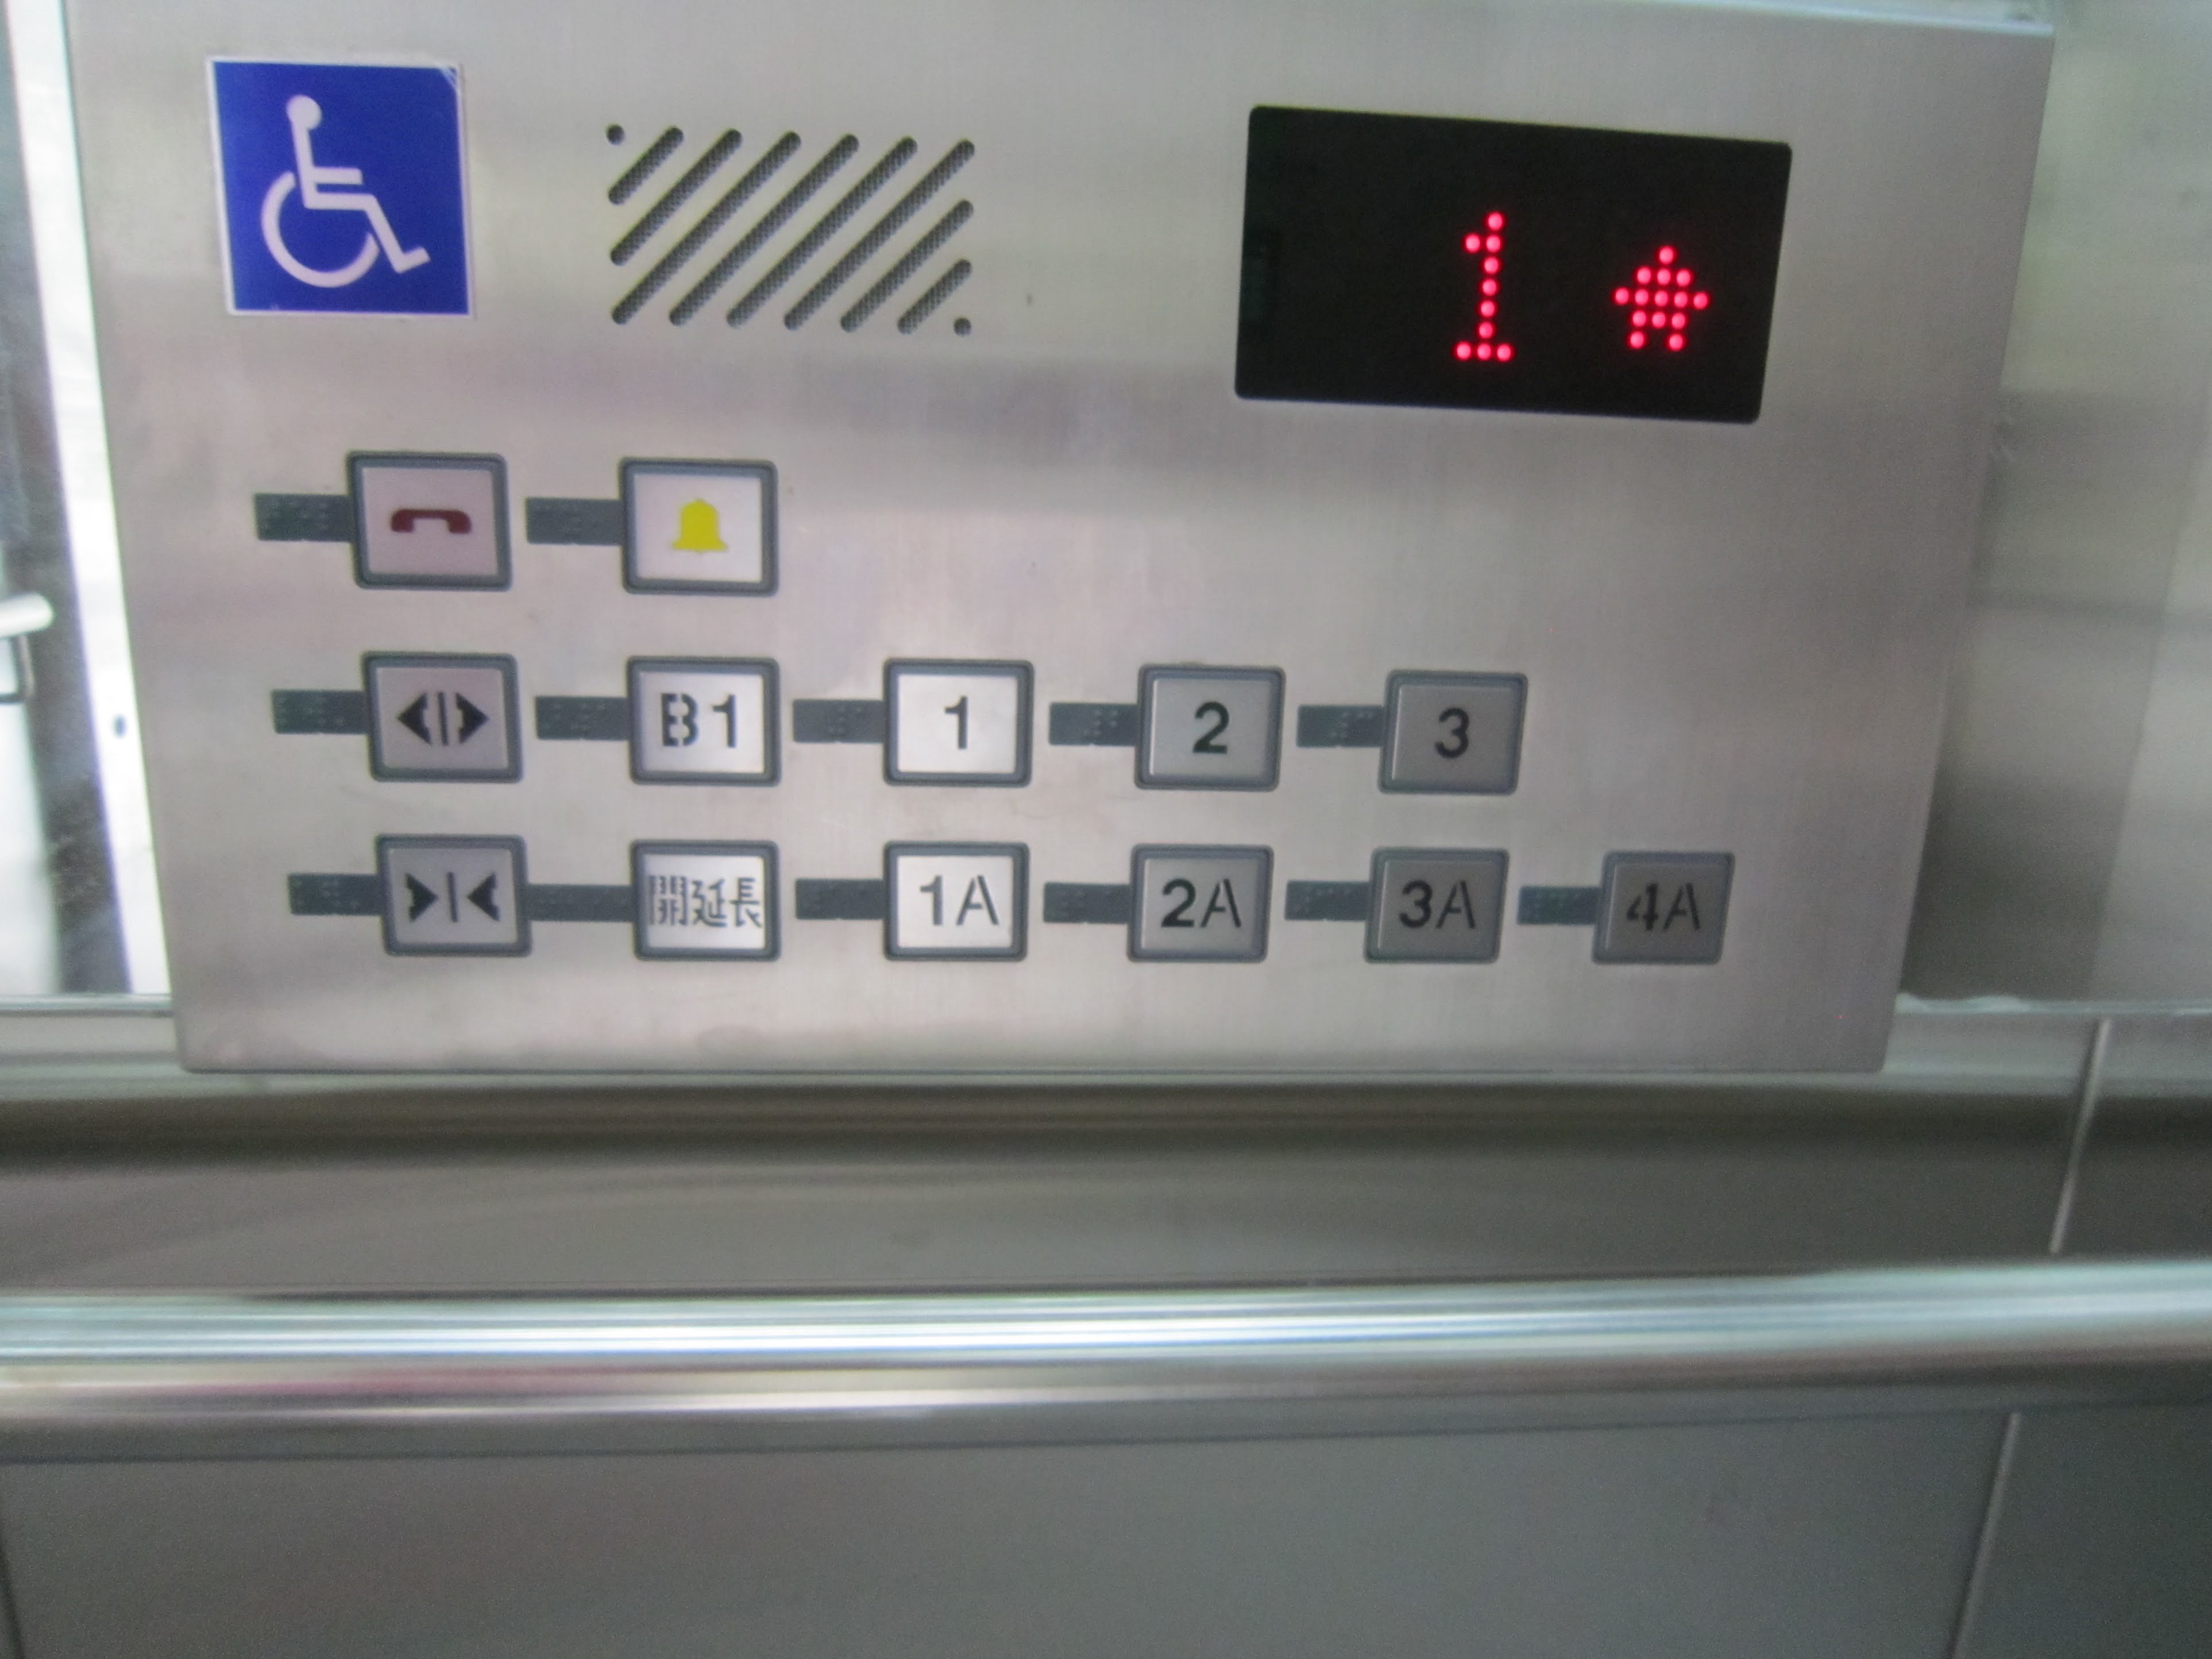 無障礙電梯樓層按鍵